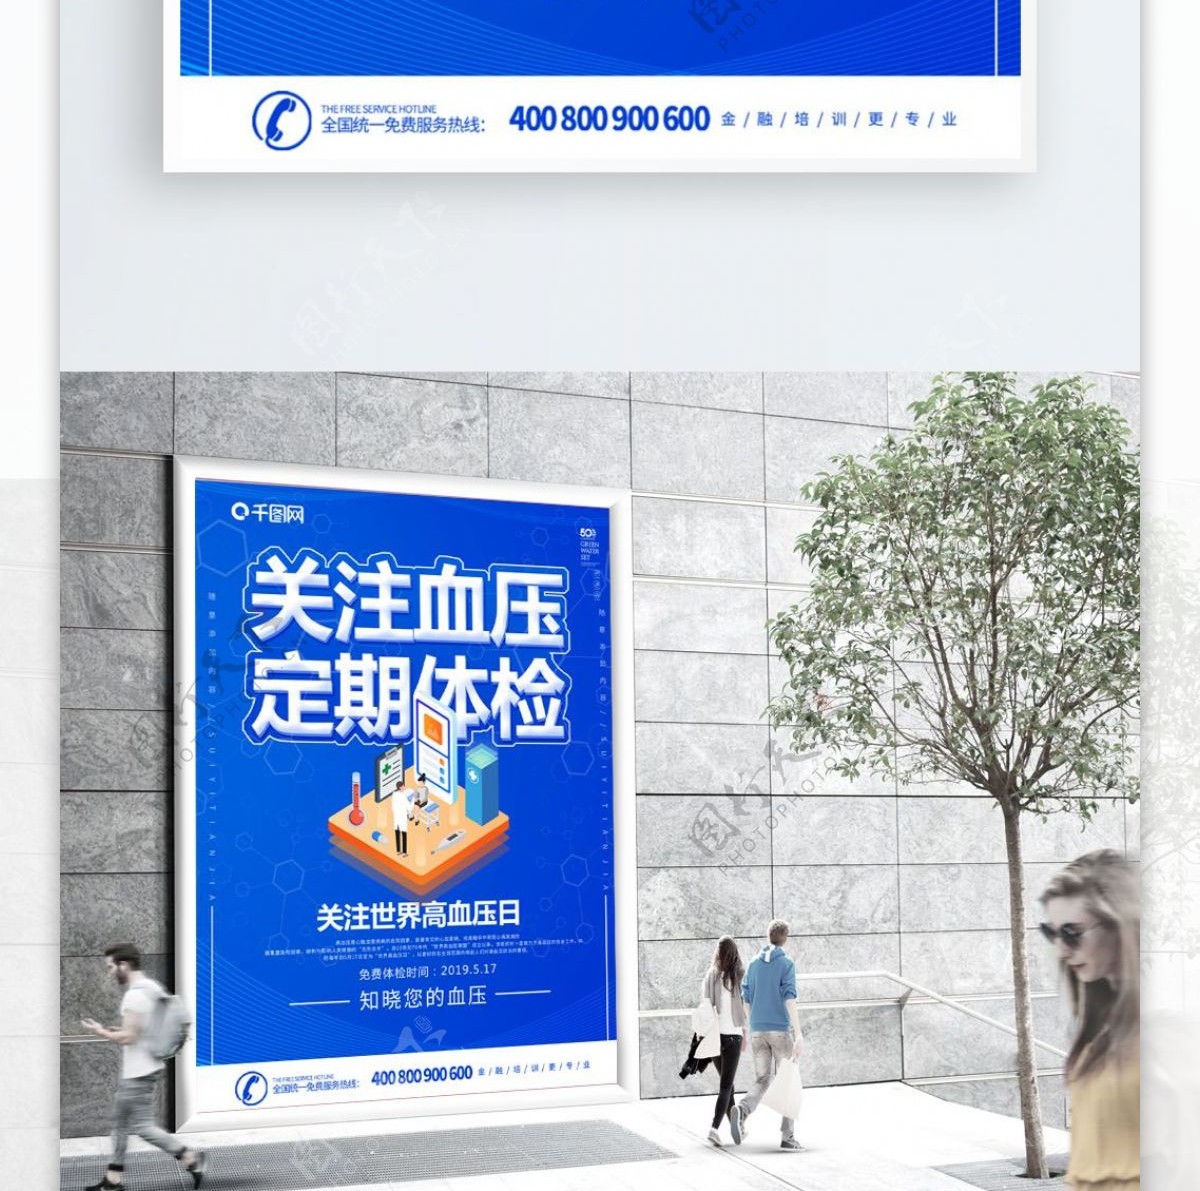 蓝色2.5D科技风世界高血压日公益海报